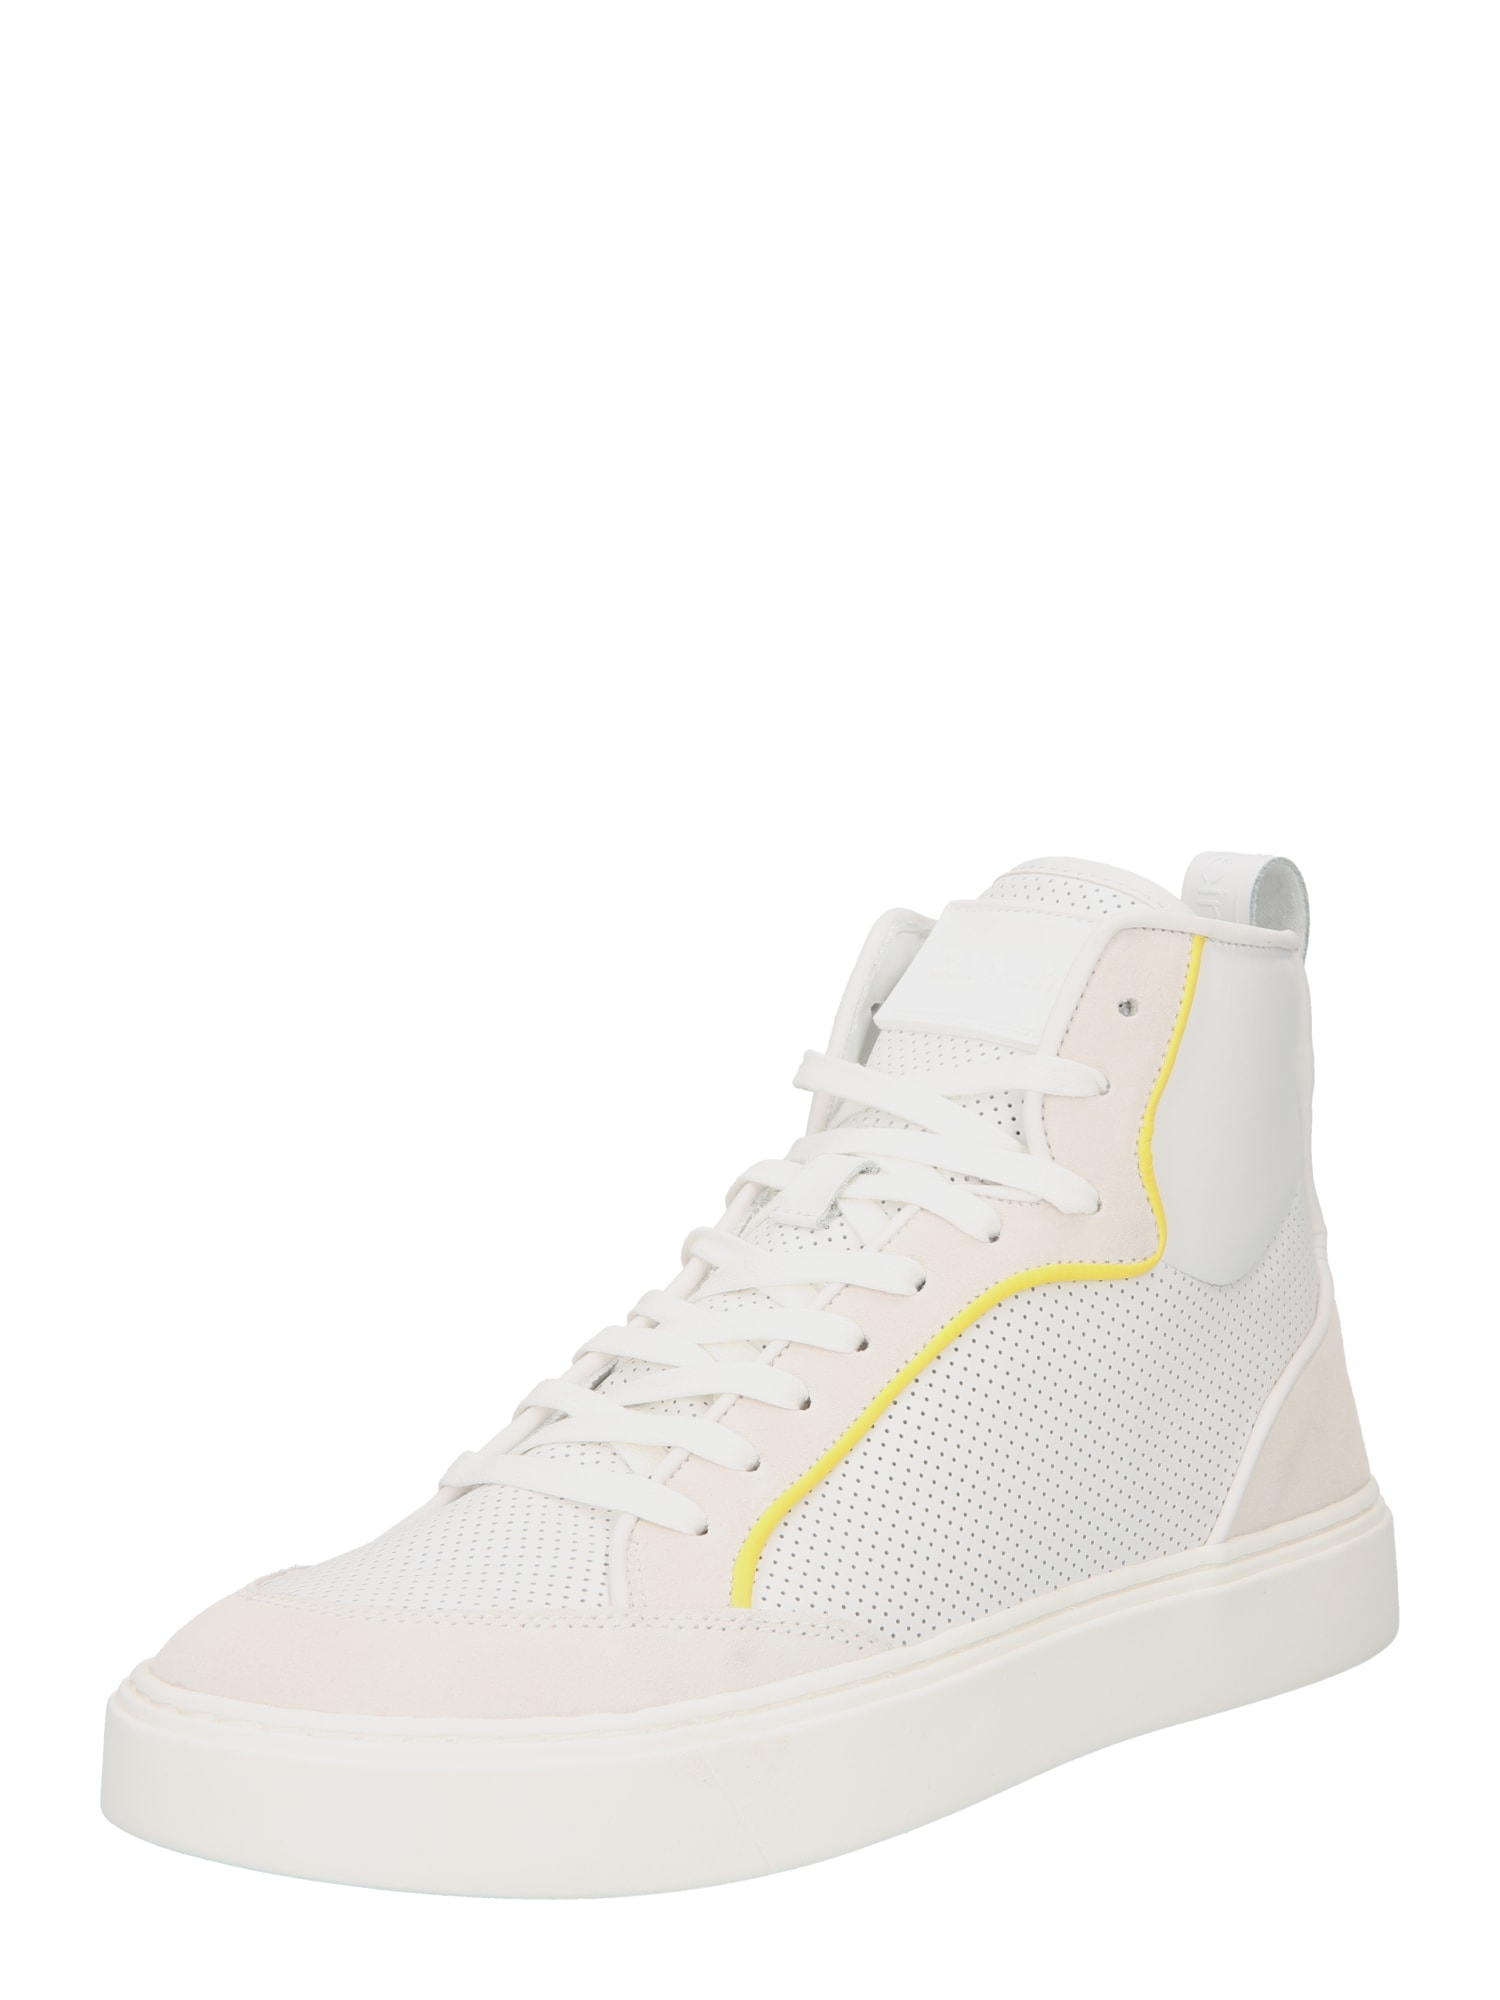 Calvin Klein Augstie brīvā laika apavi krēmkrāsas / dzeltens / balts